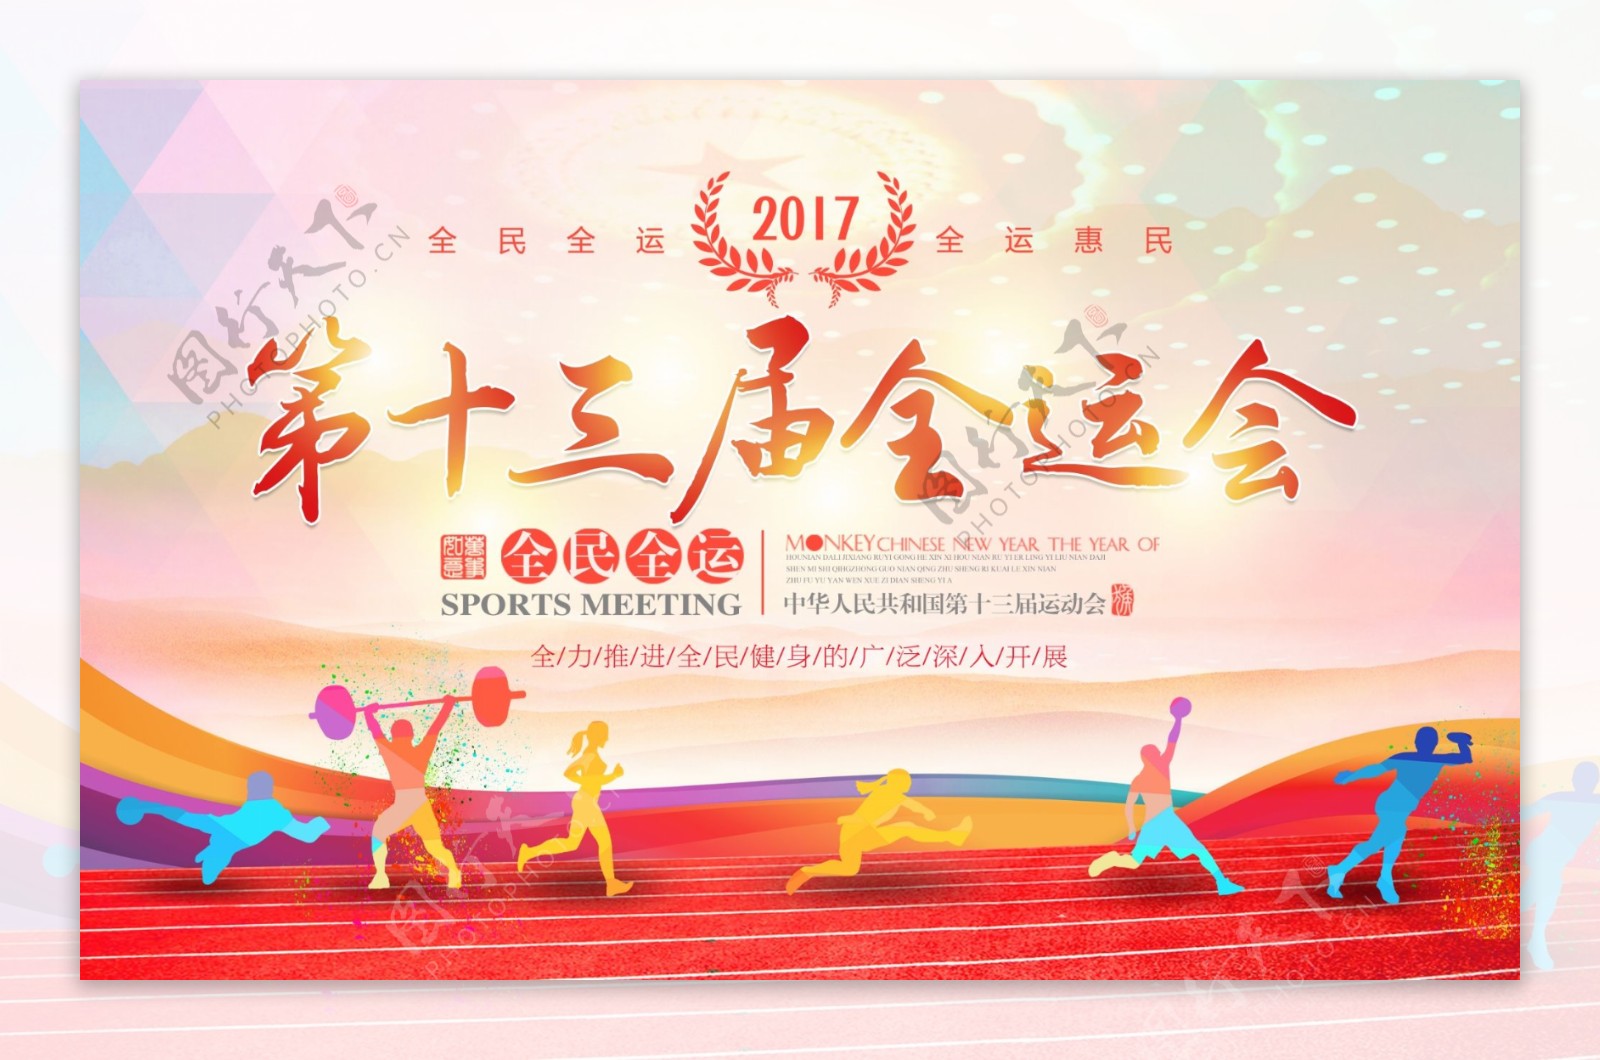 清新简约2017第十三届全运会宣传海报